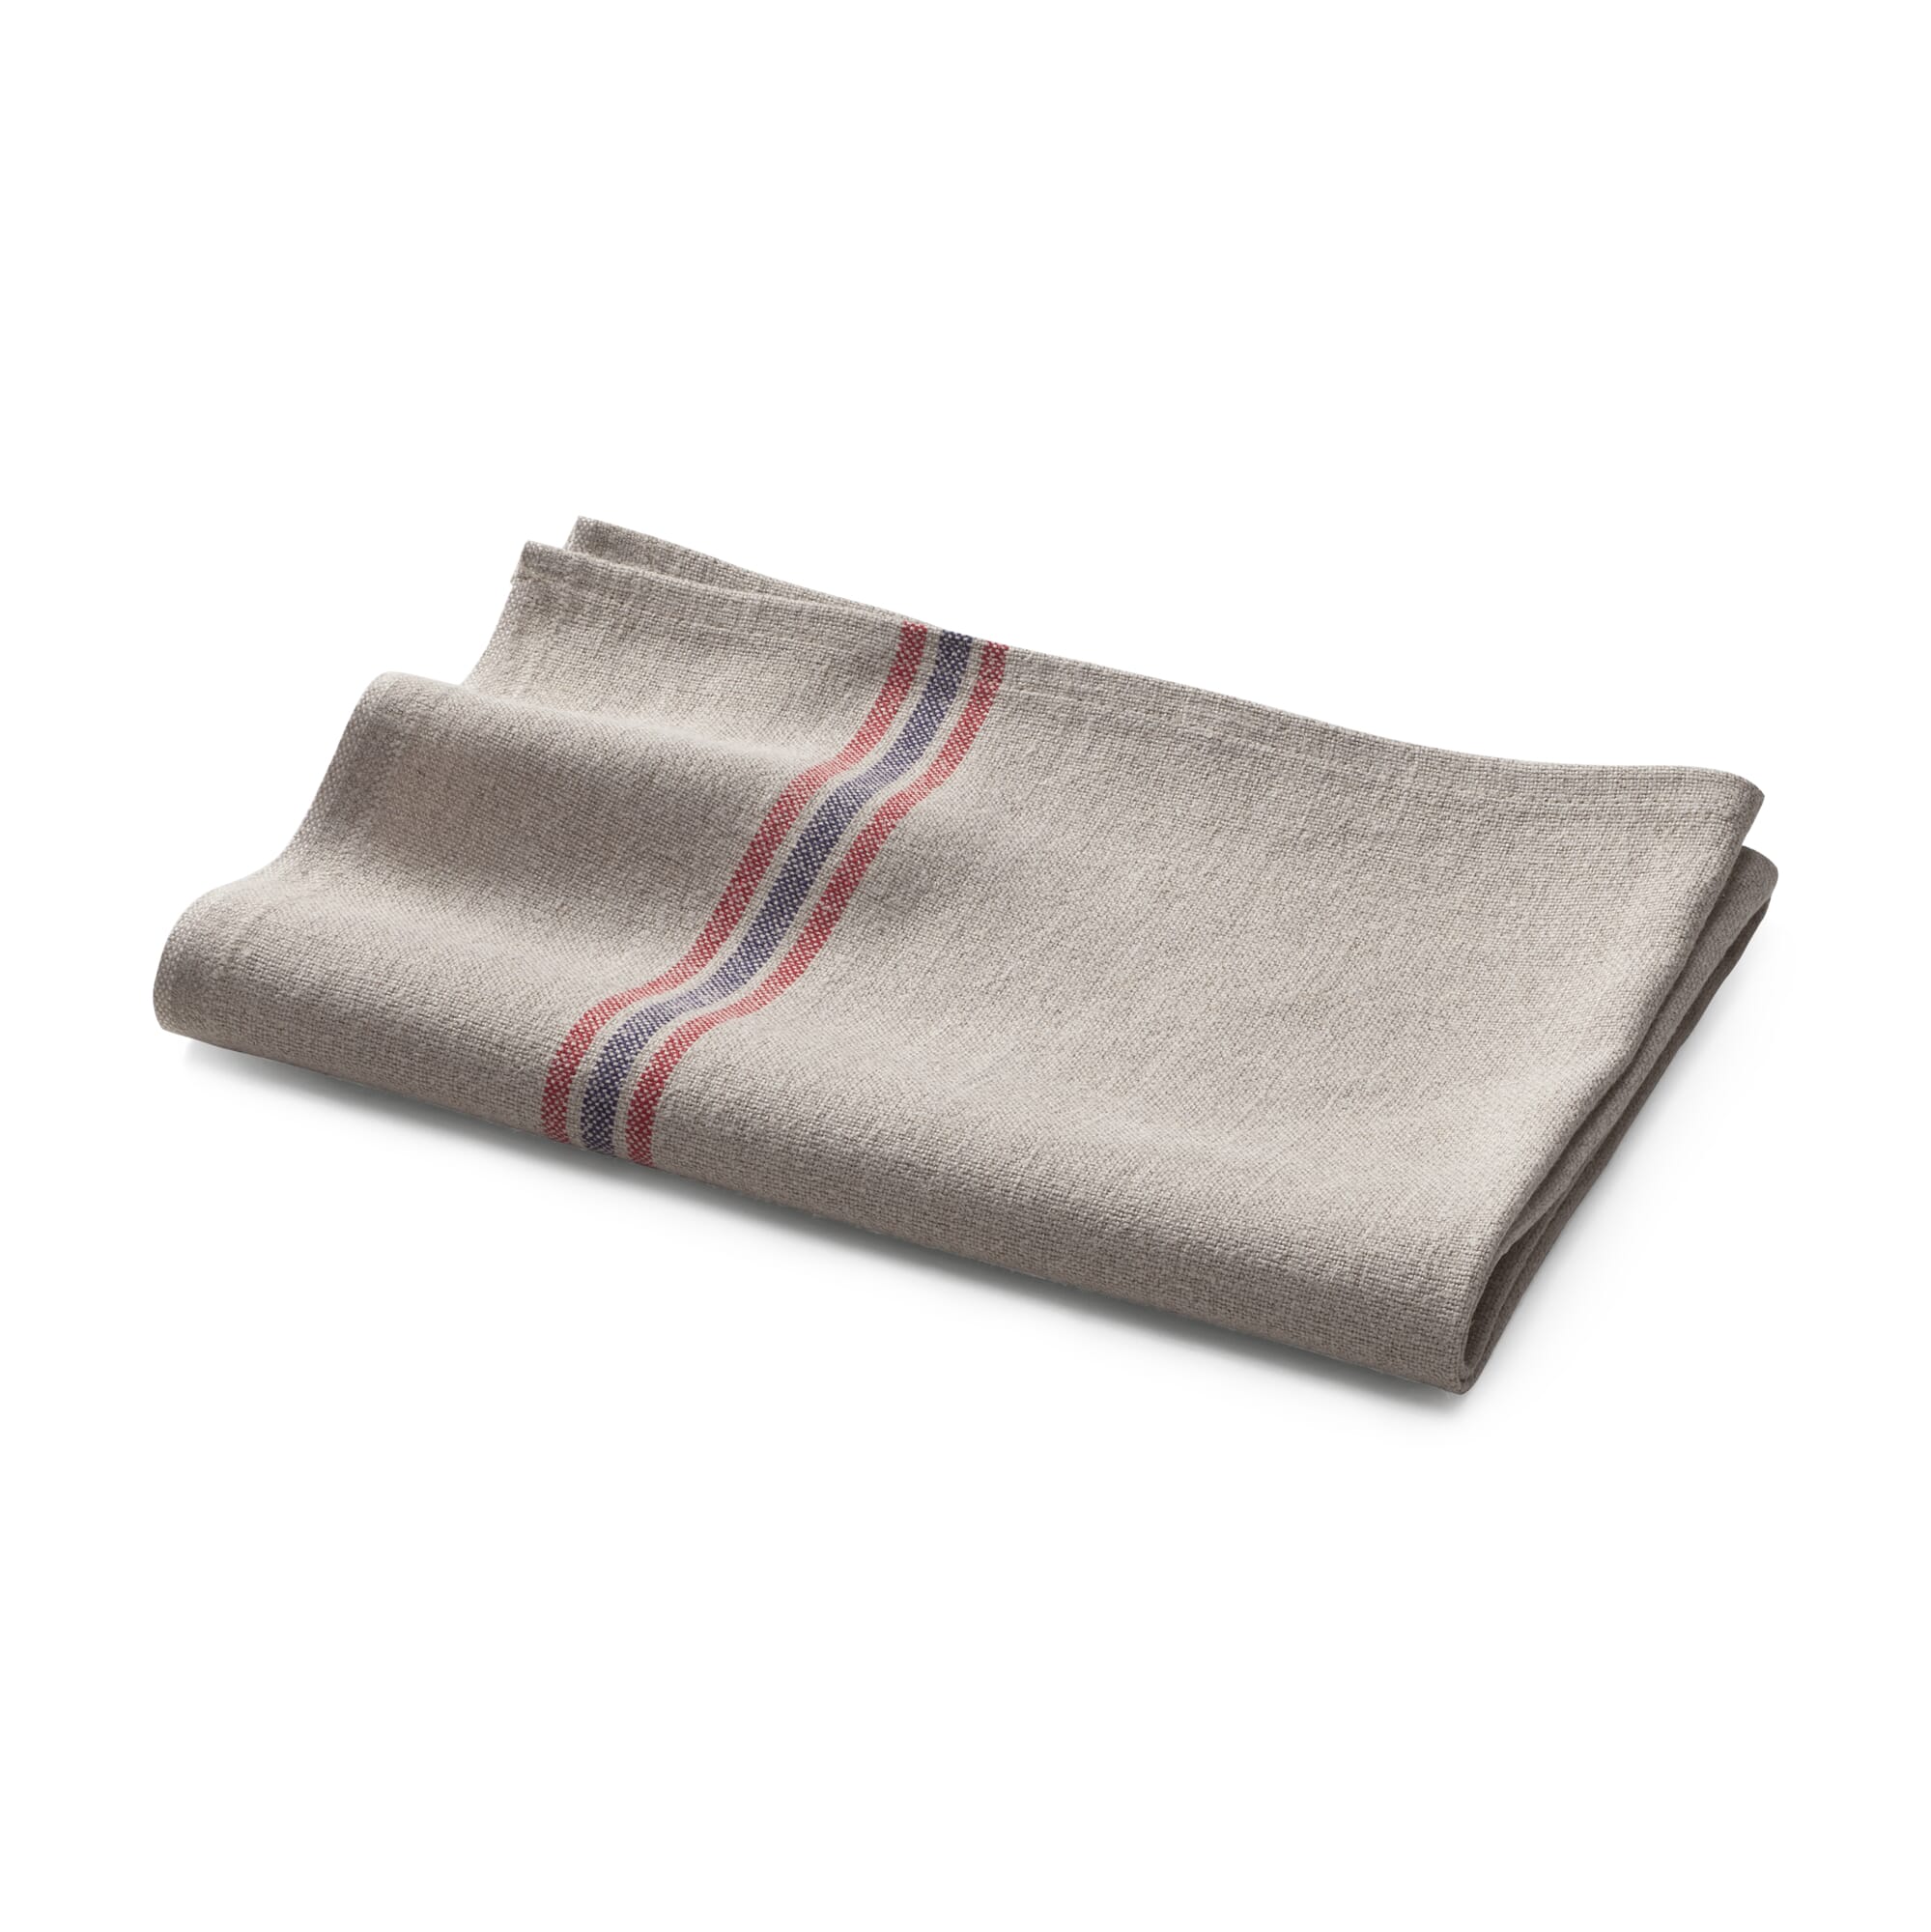 https://assets.manufactum.de/p/044/044132/44132_01.jpg/kitchen-towel-linen-stripe.jpg